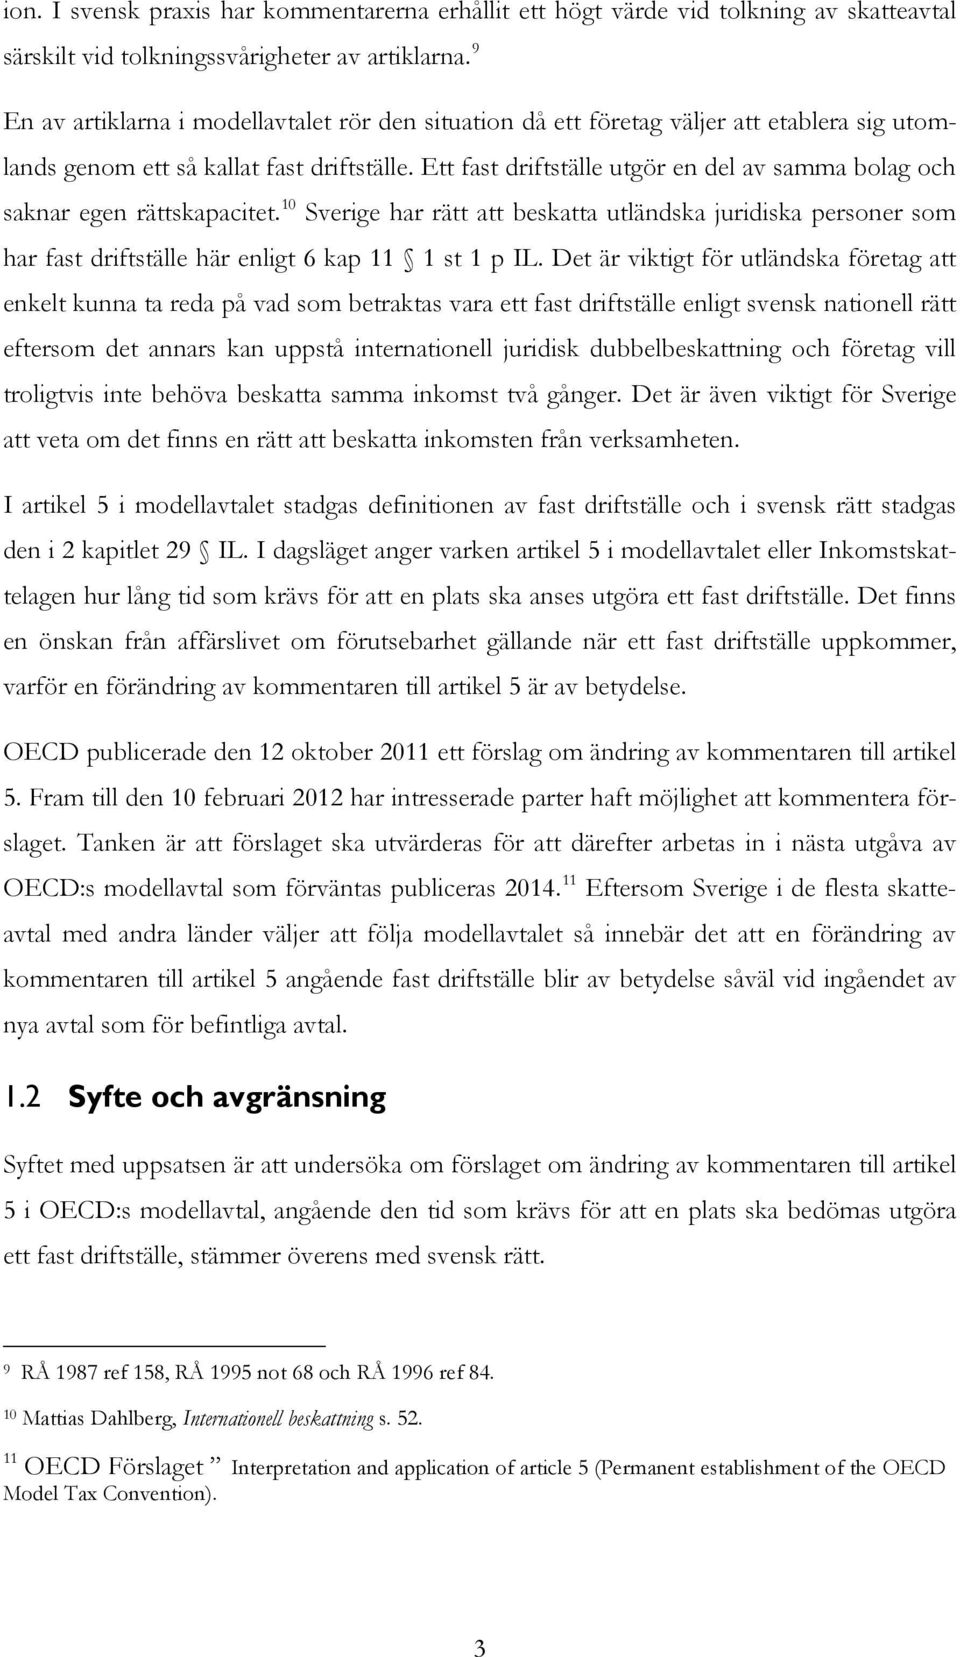 Ett fast driftställe utgör en del av samma bolag och saknar egen rättskapacitet. 10 Sverige har rätt att beskatta utländska juridiska personer som har fast driftställe här enligt 6 kap 11 1 st 1 p IL.